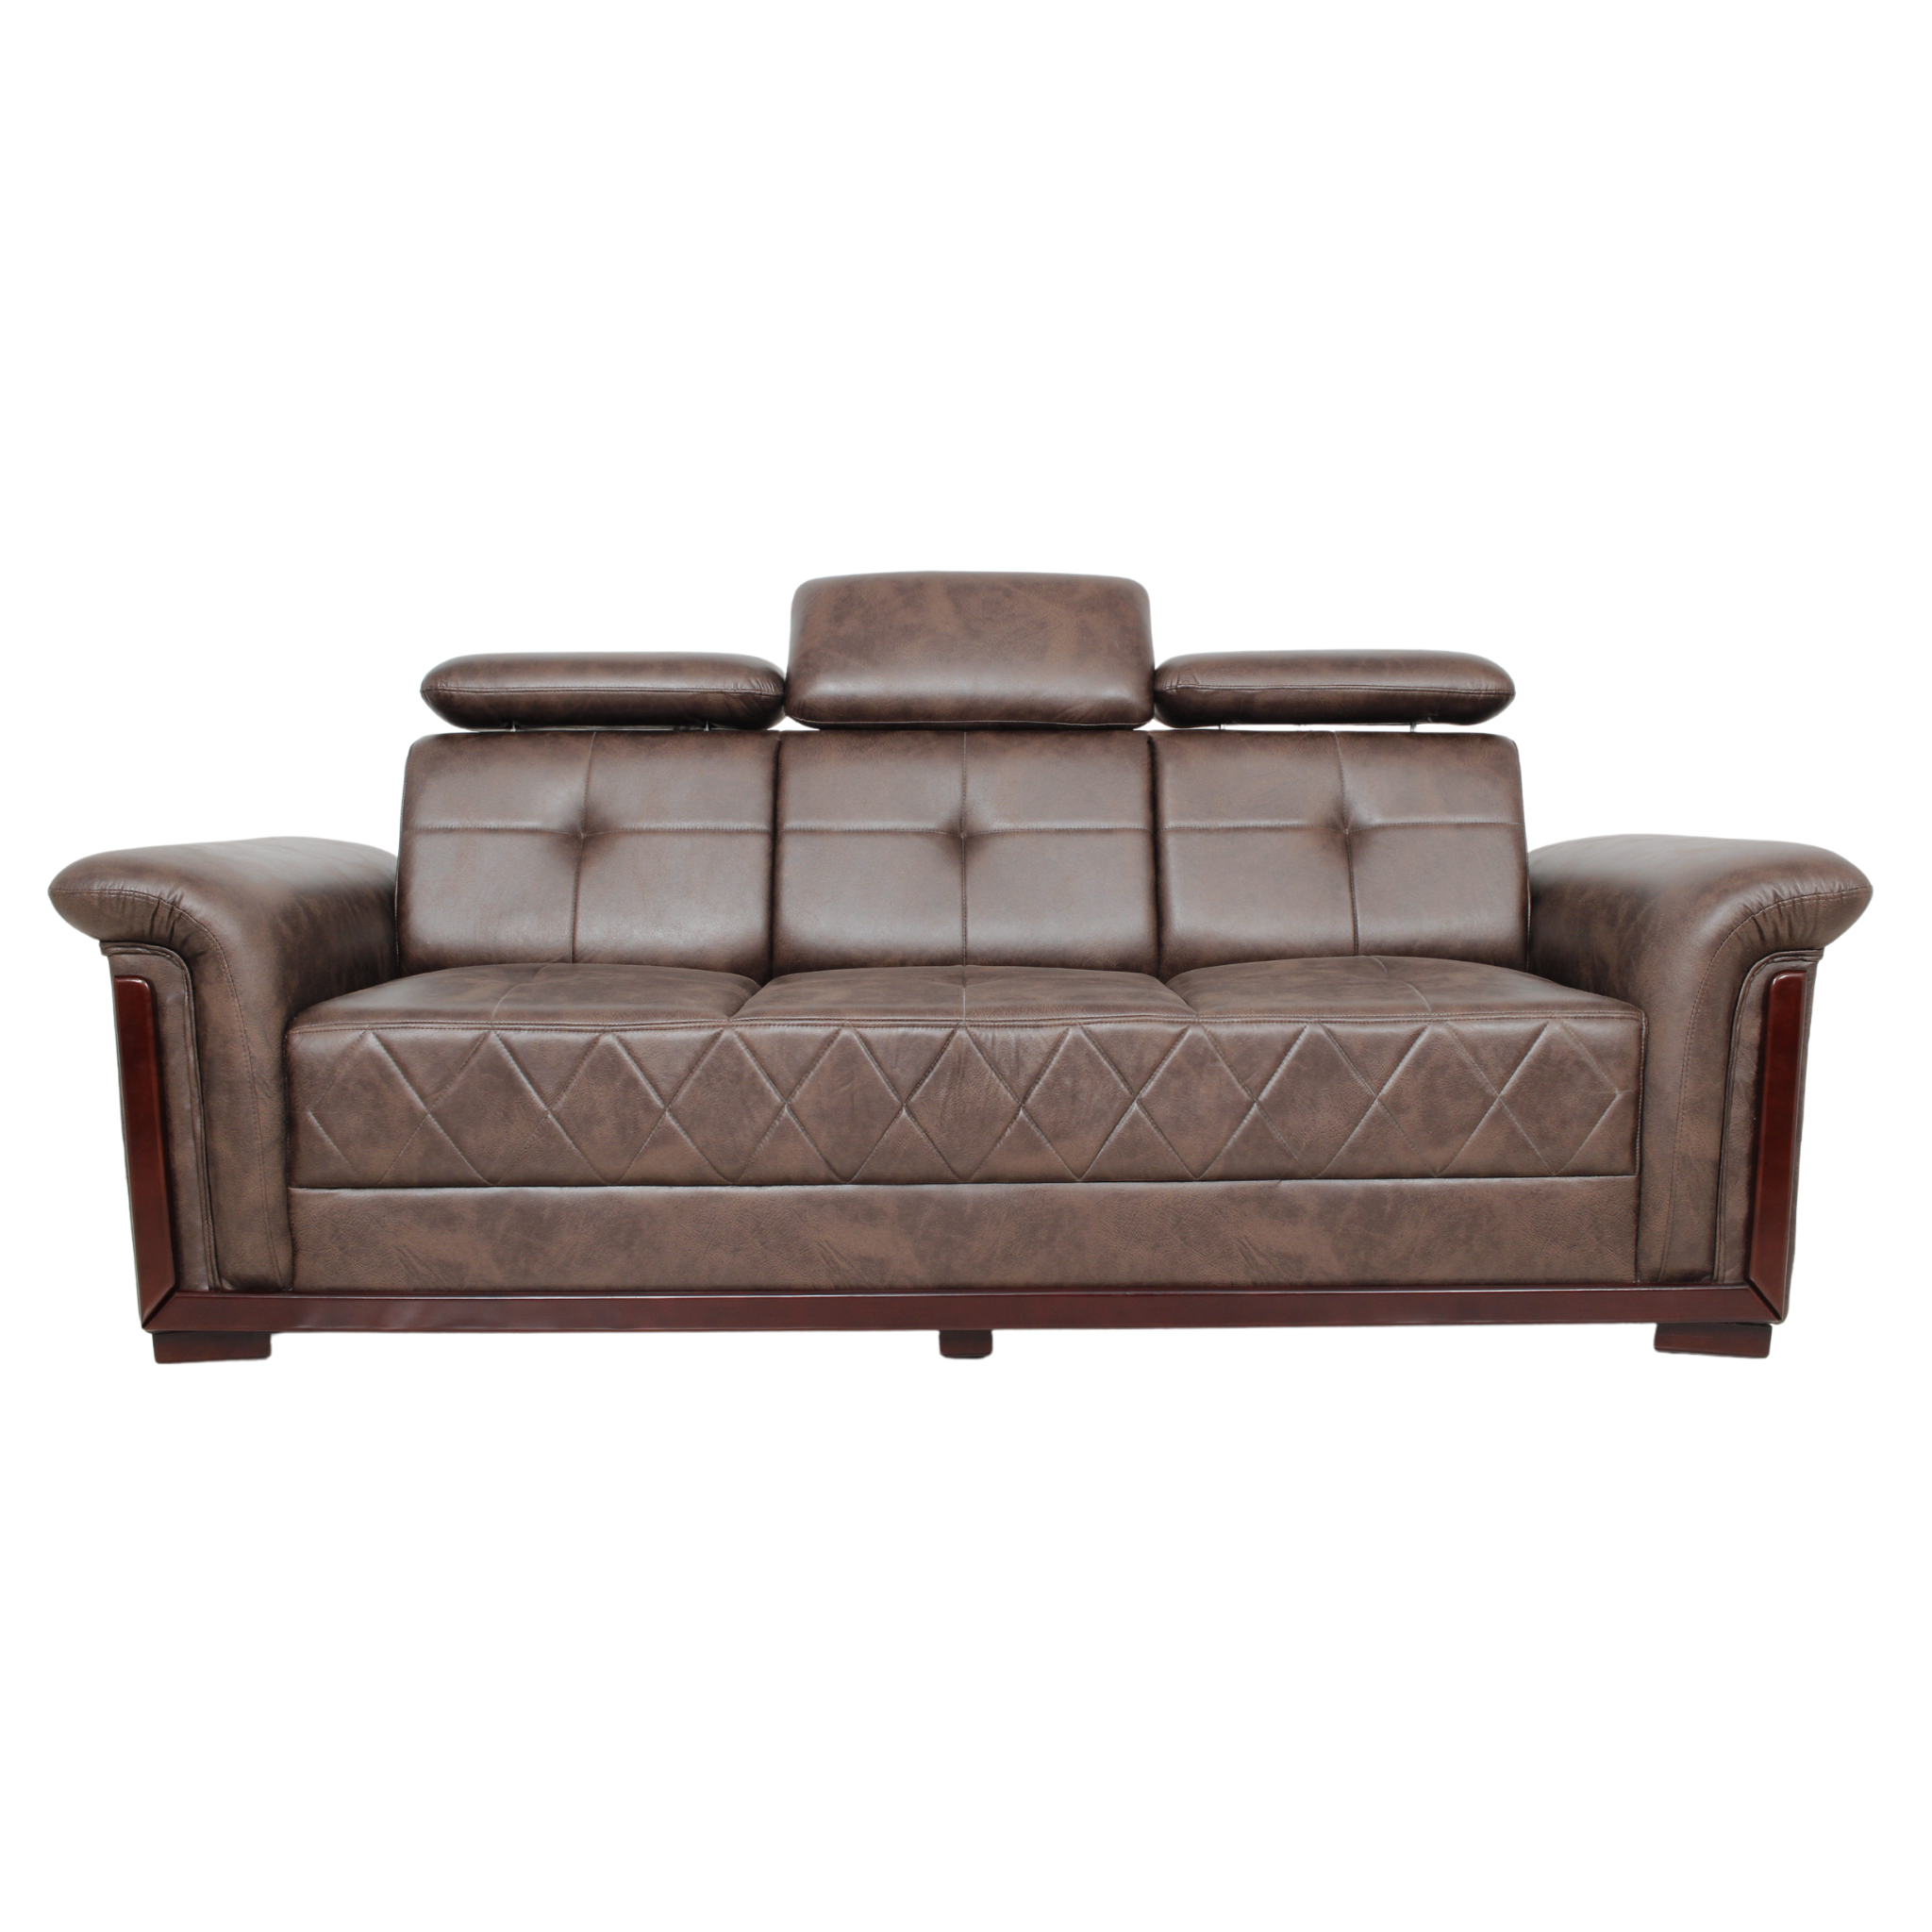 Aqua Plus Setty Leather Sofa